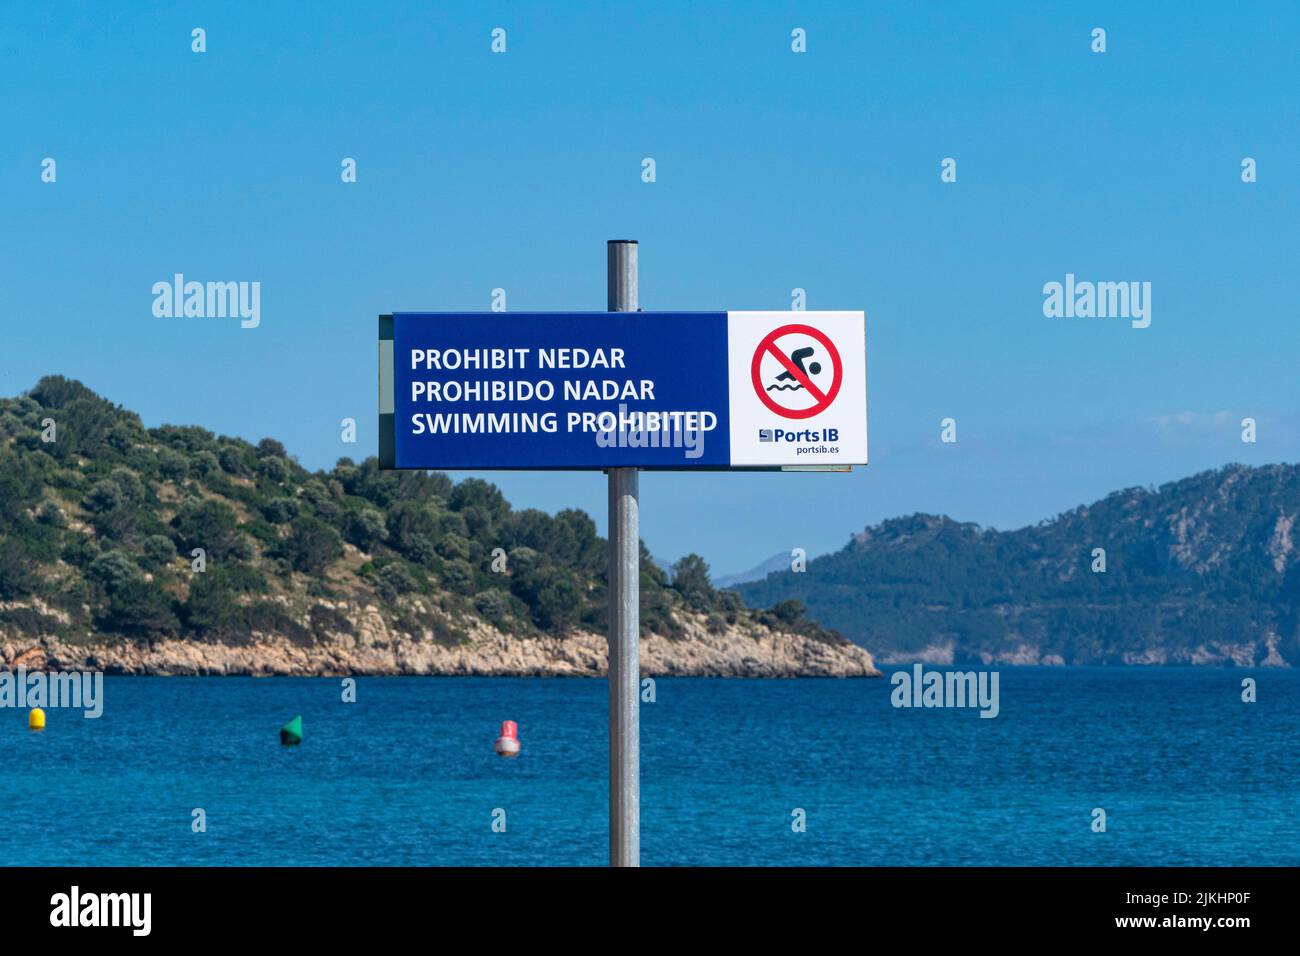 No swimming sign, Cala Pi de la Posada, Platja de Formentor, Cap Formentor, Mallorca, Balearic Islands, Spain Stock Photo